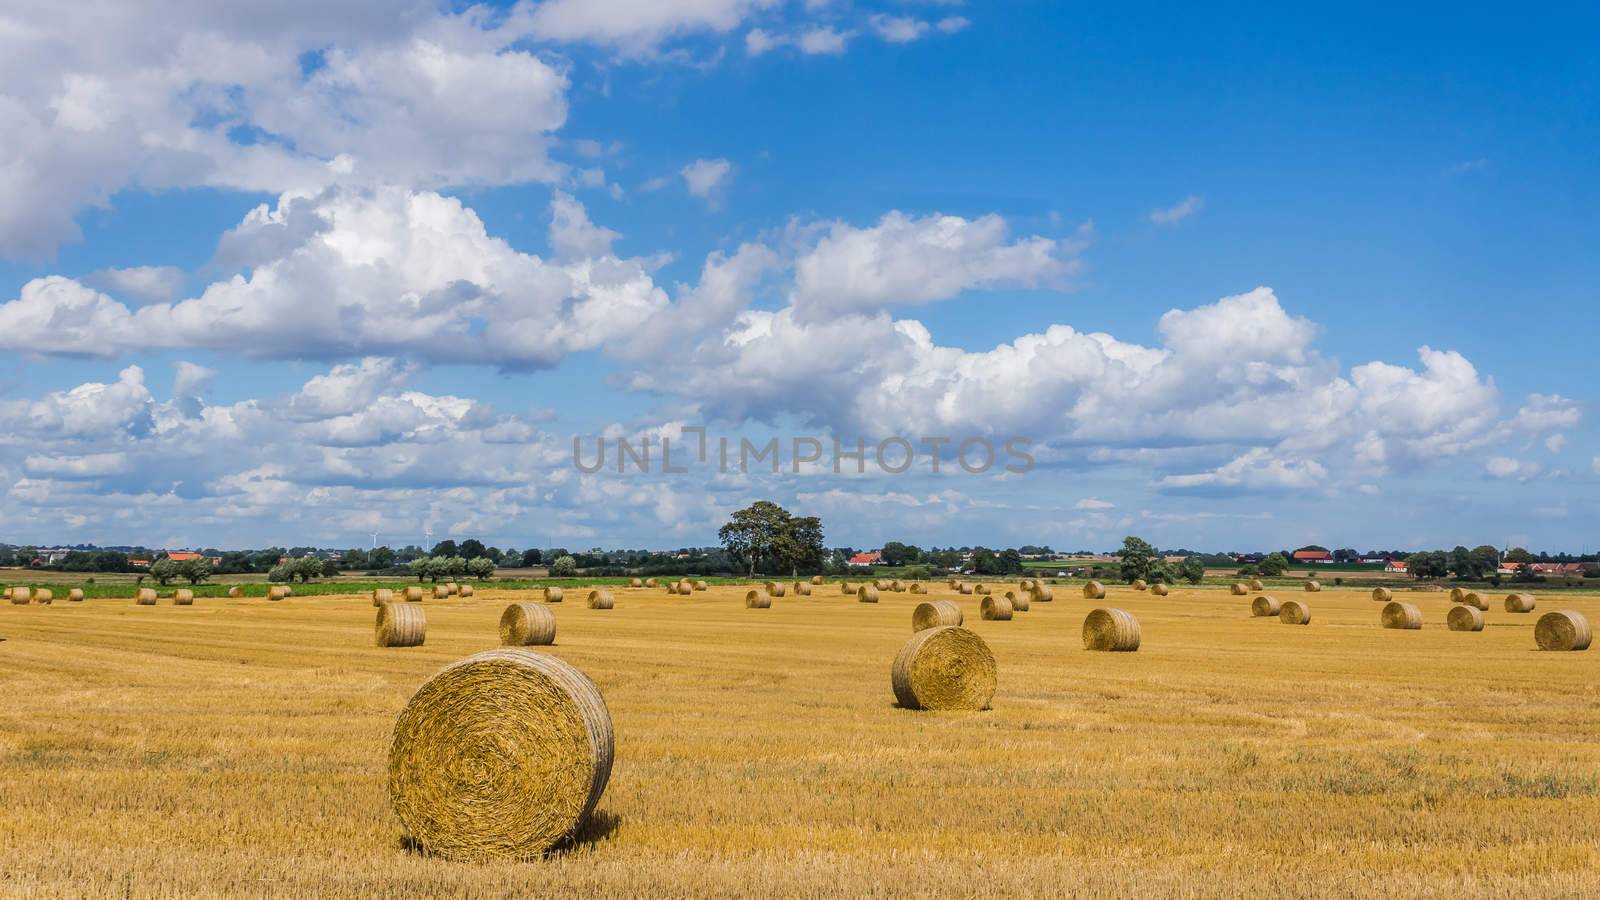 Rural landscape by pawel_szczepanski